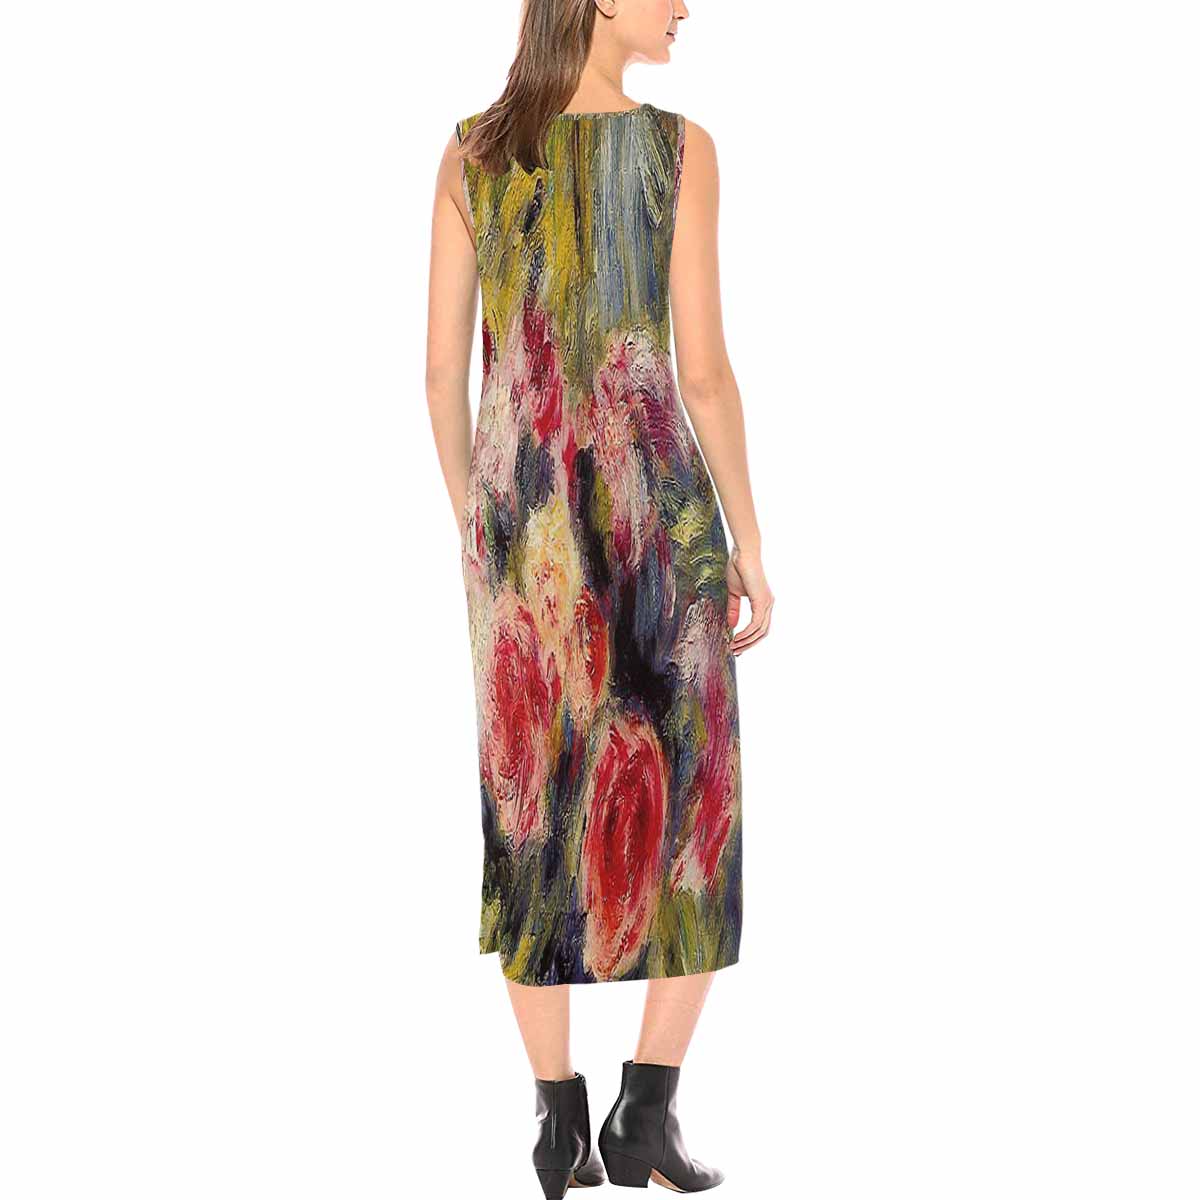 Vintage floral long dress, model D09538 Design 26